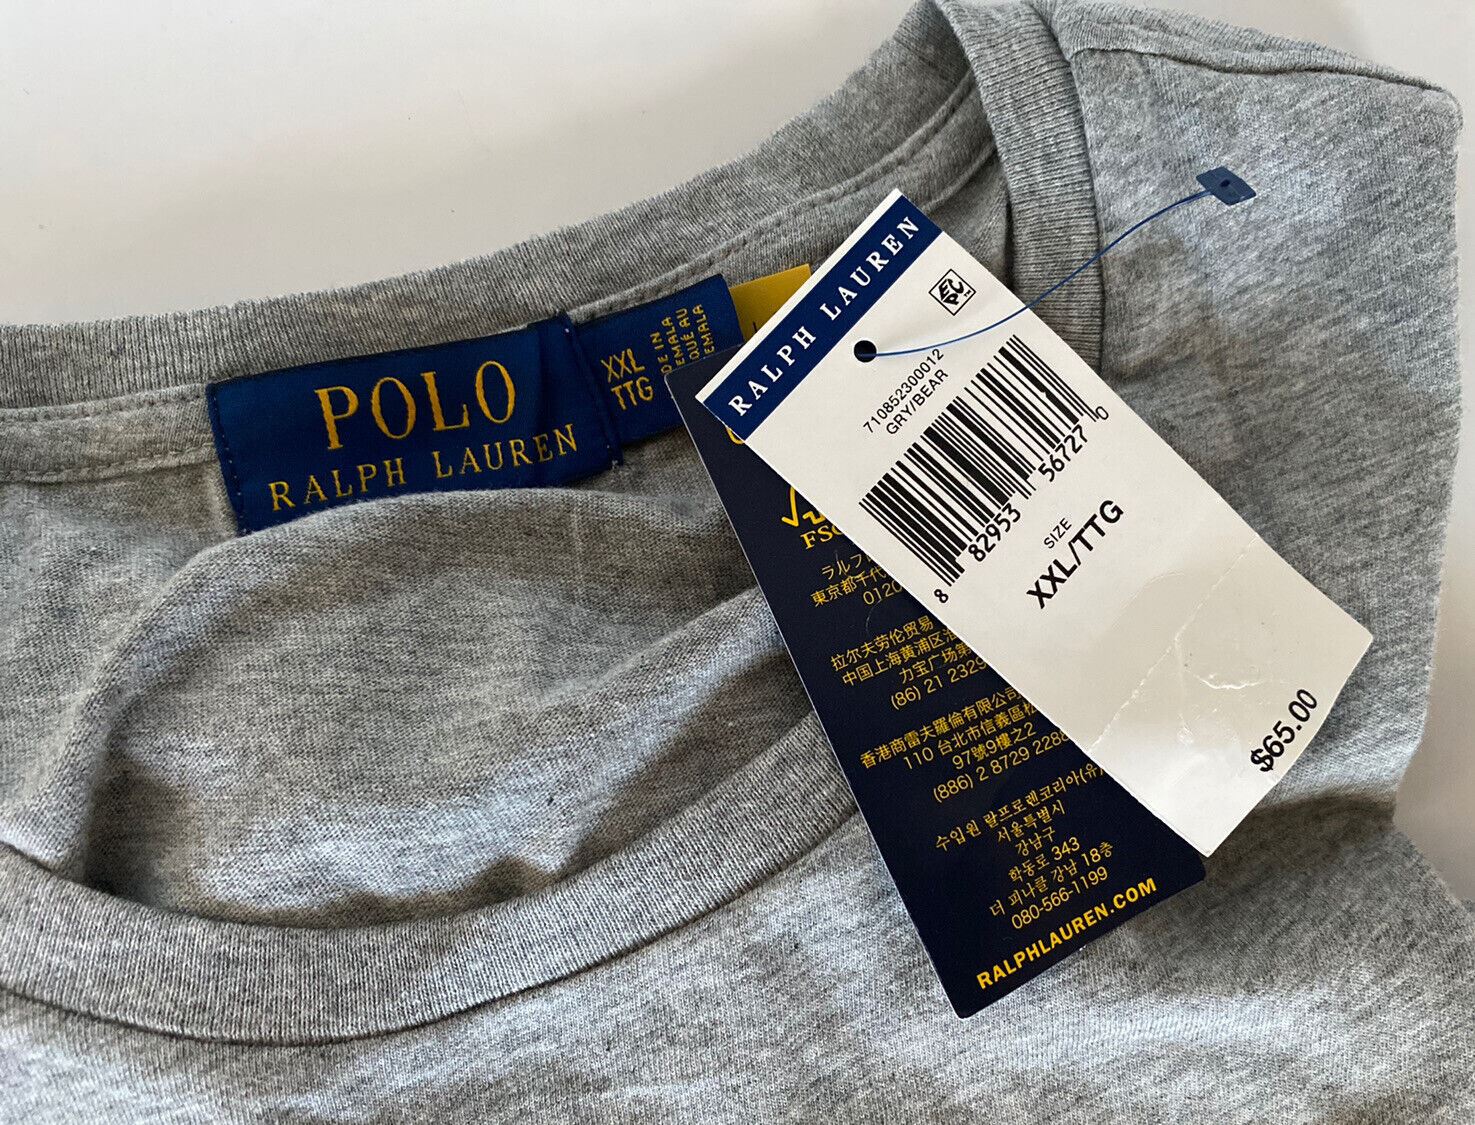 Neu mit Etikett: 65 $ Polo Ralph Lauren Bear T-Shirt Grau 2XL